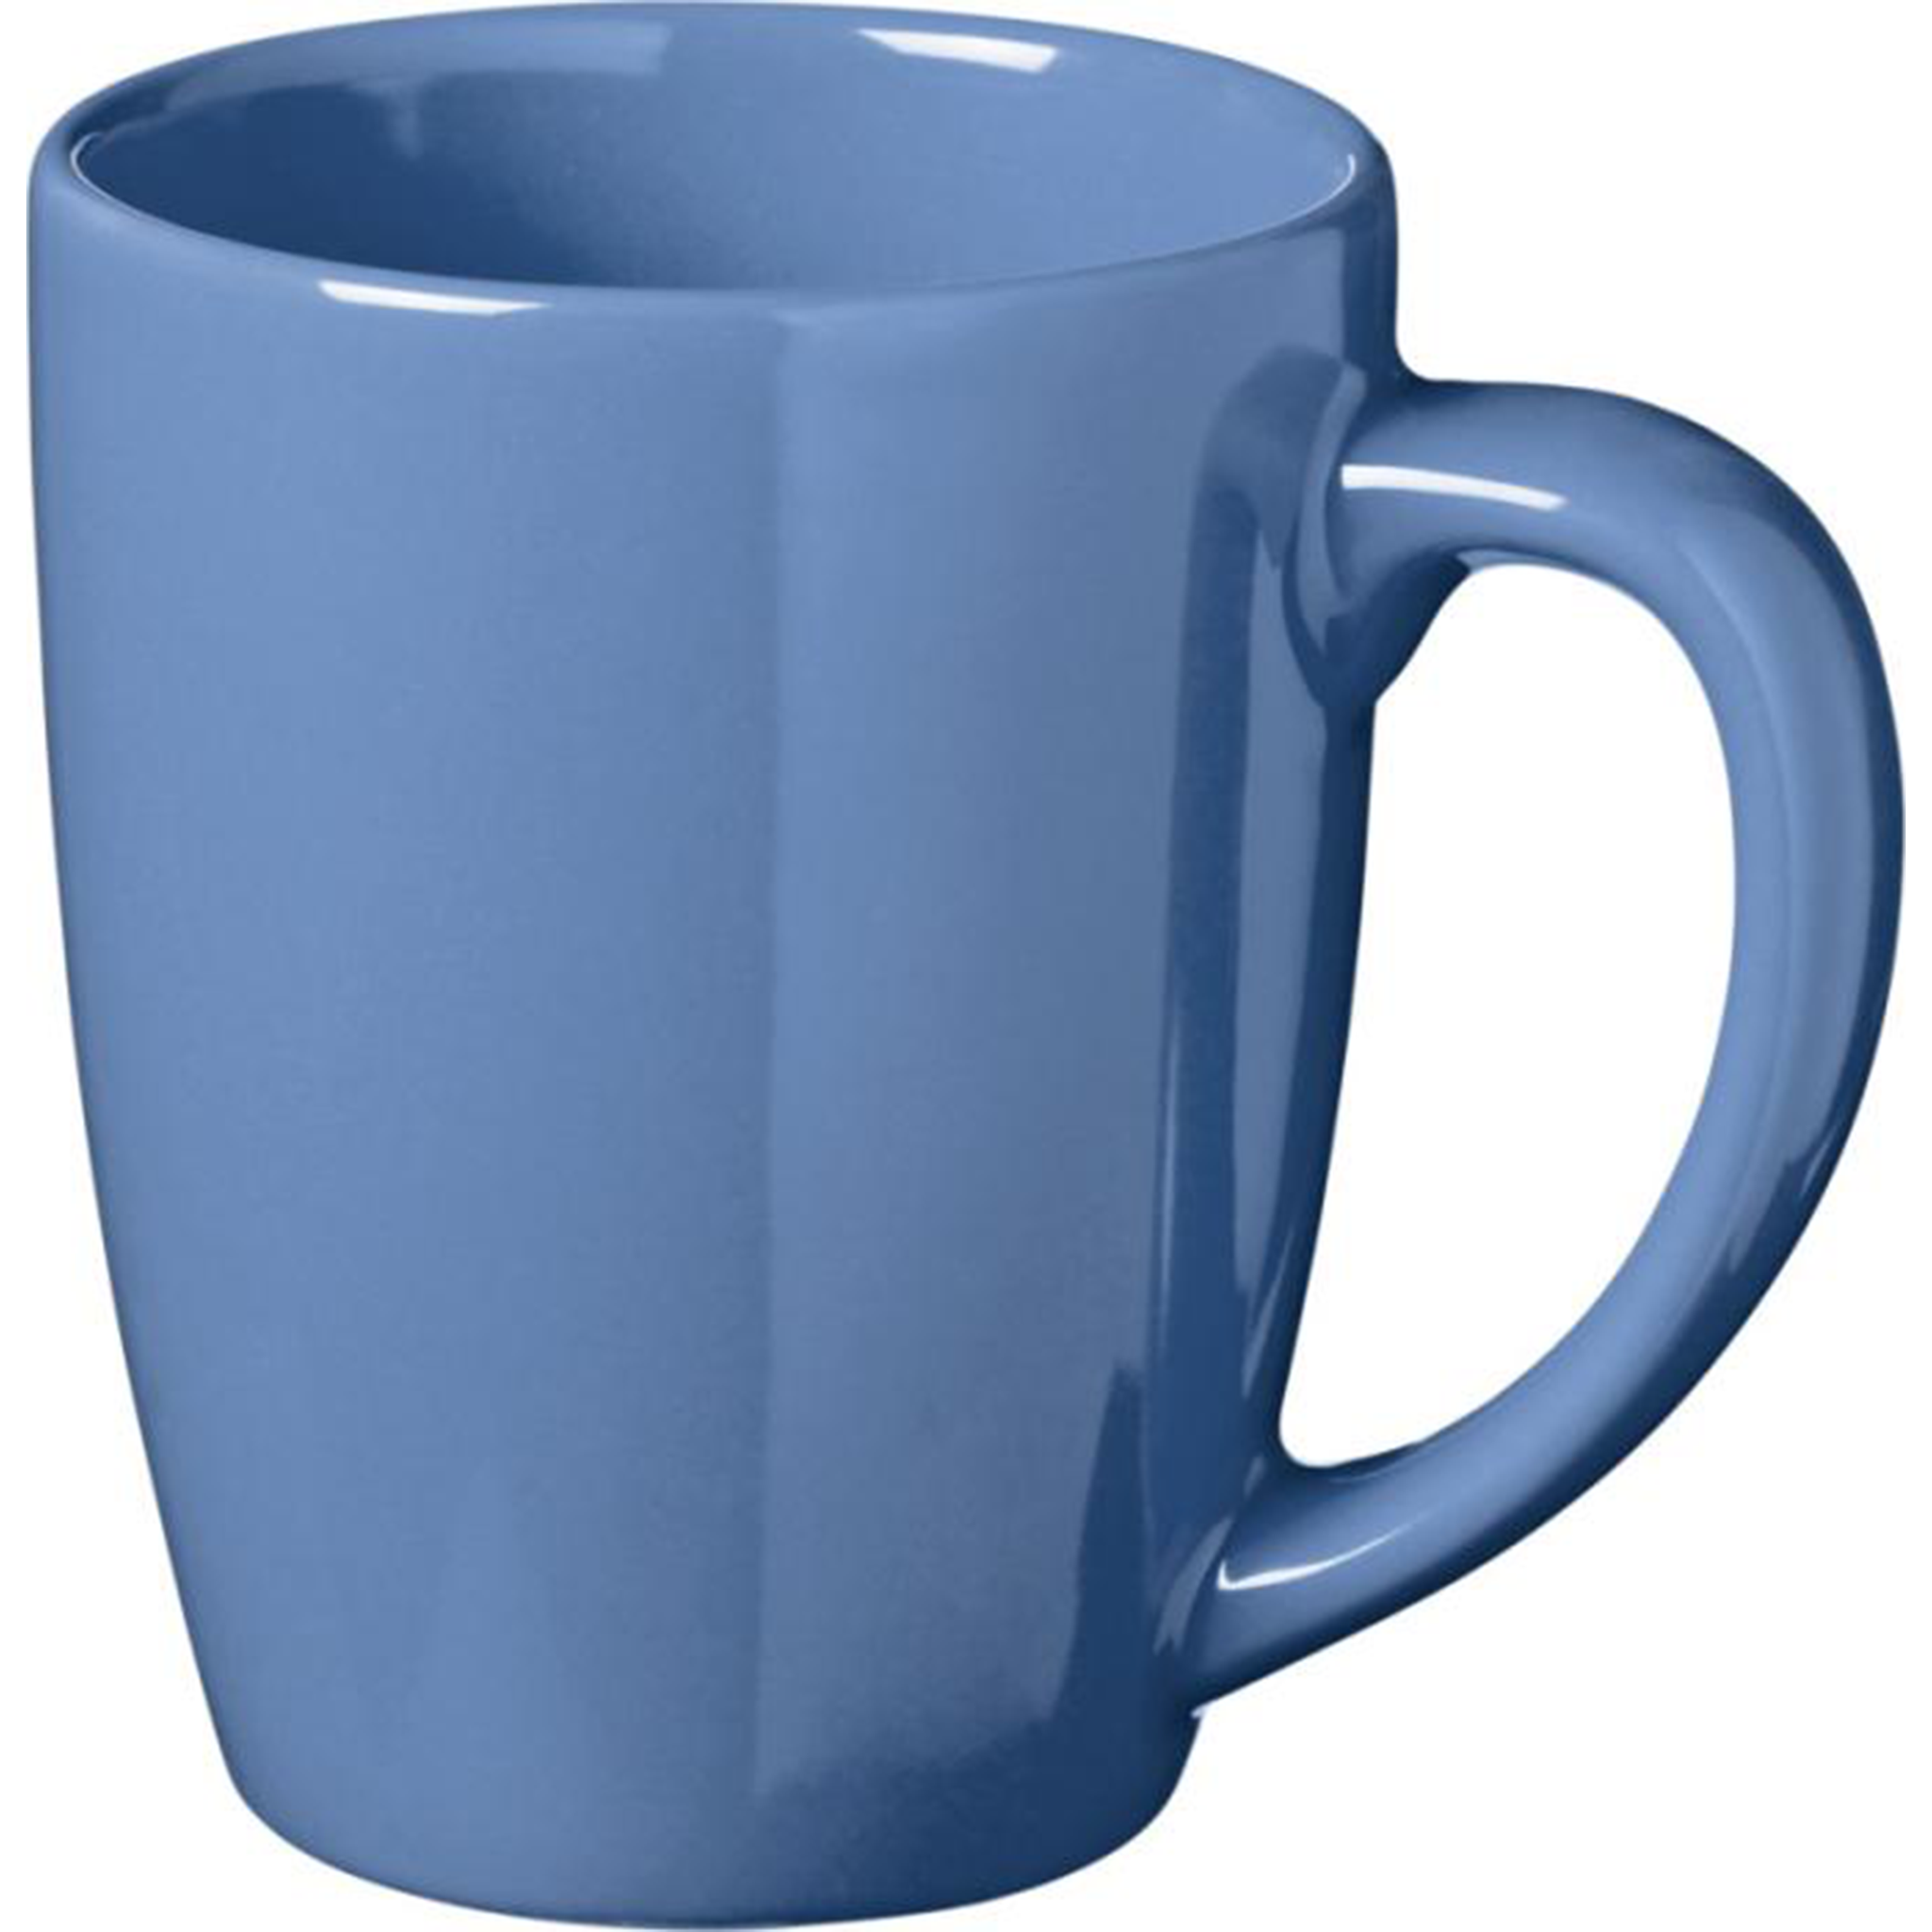 Klassisk keramisk kaffemugg i blått.